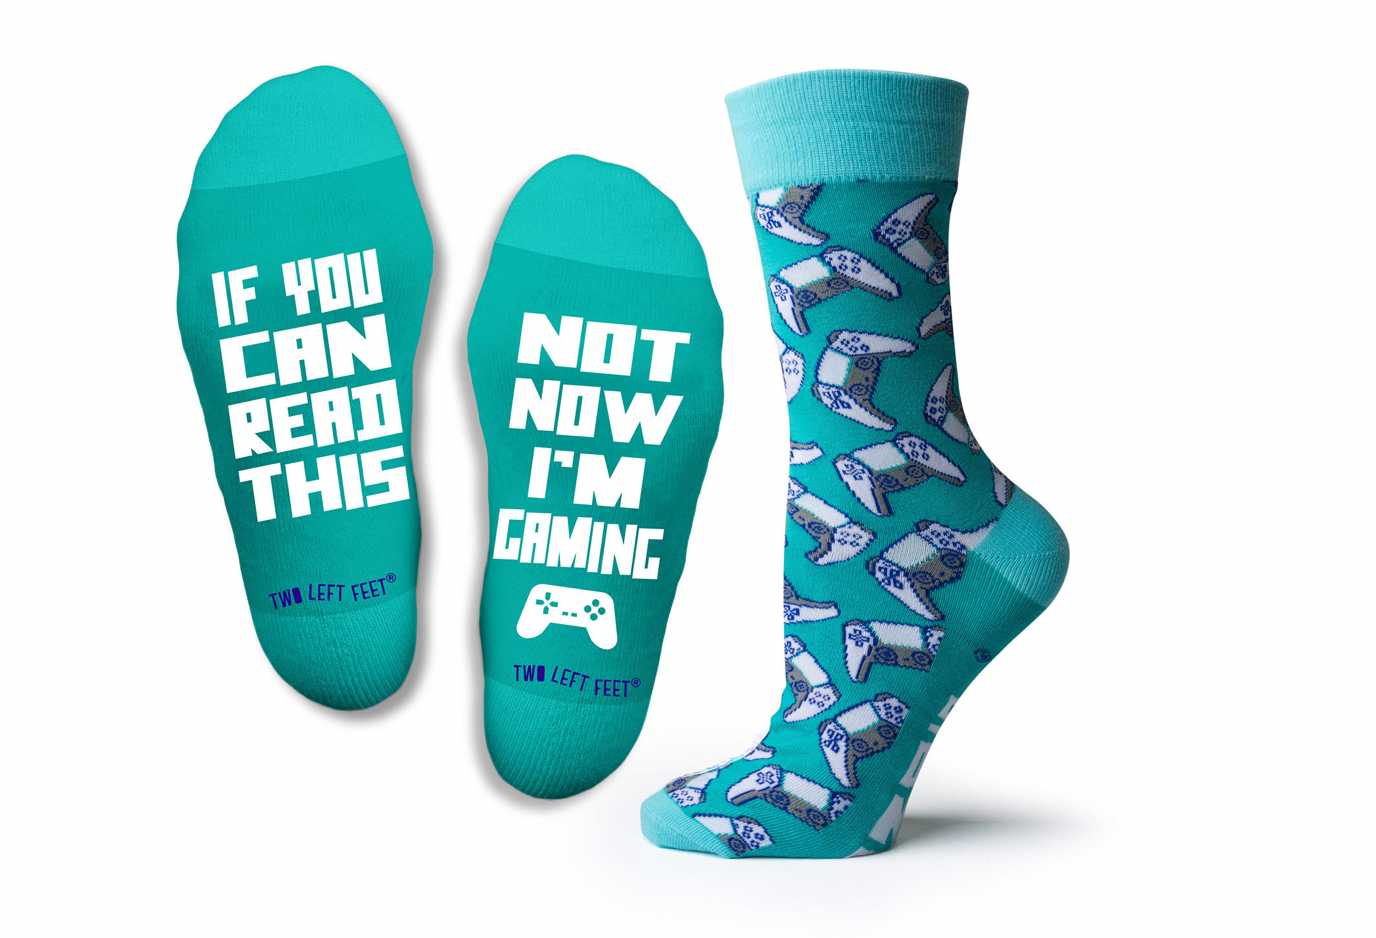 Two Left Feet Not Now I'm Gaming Socks